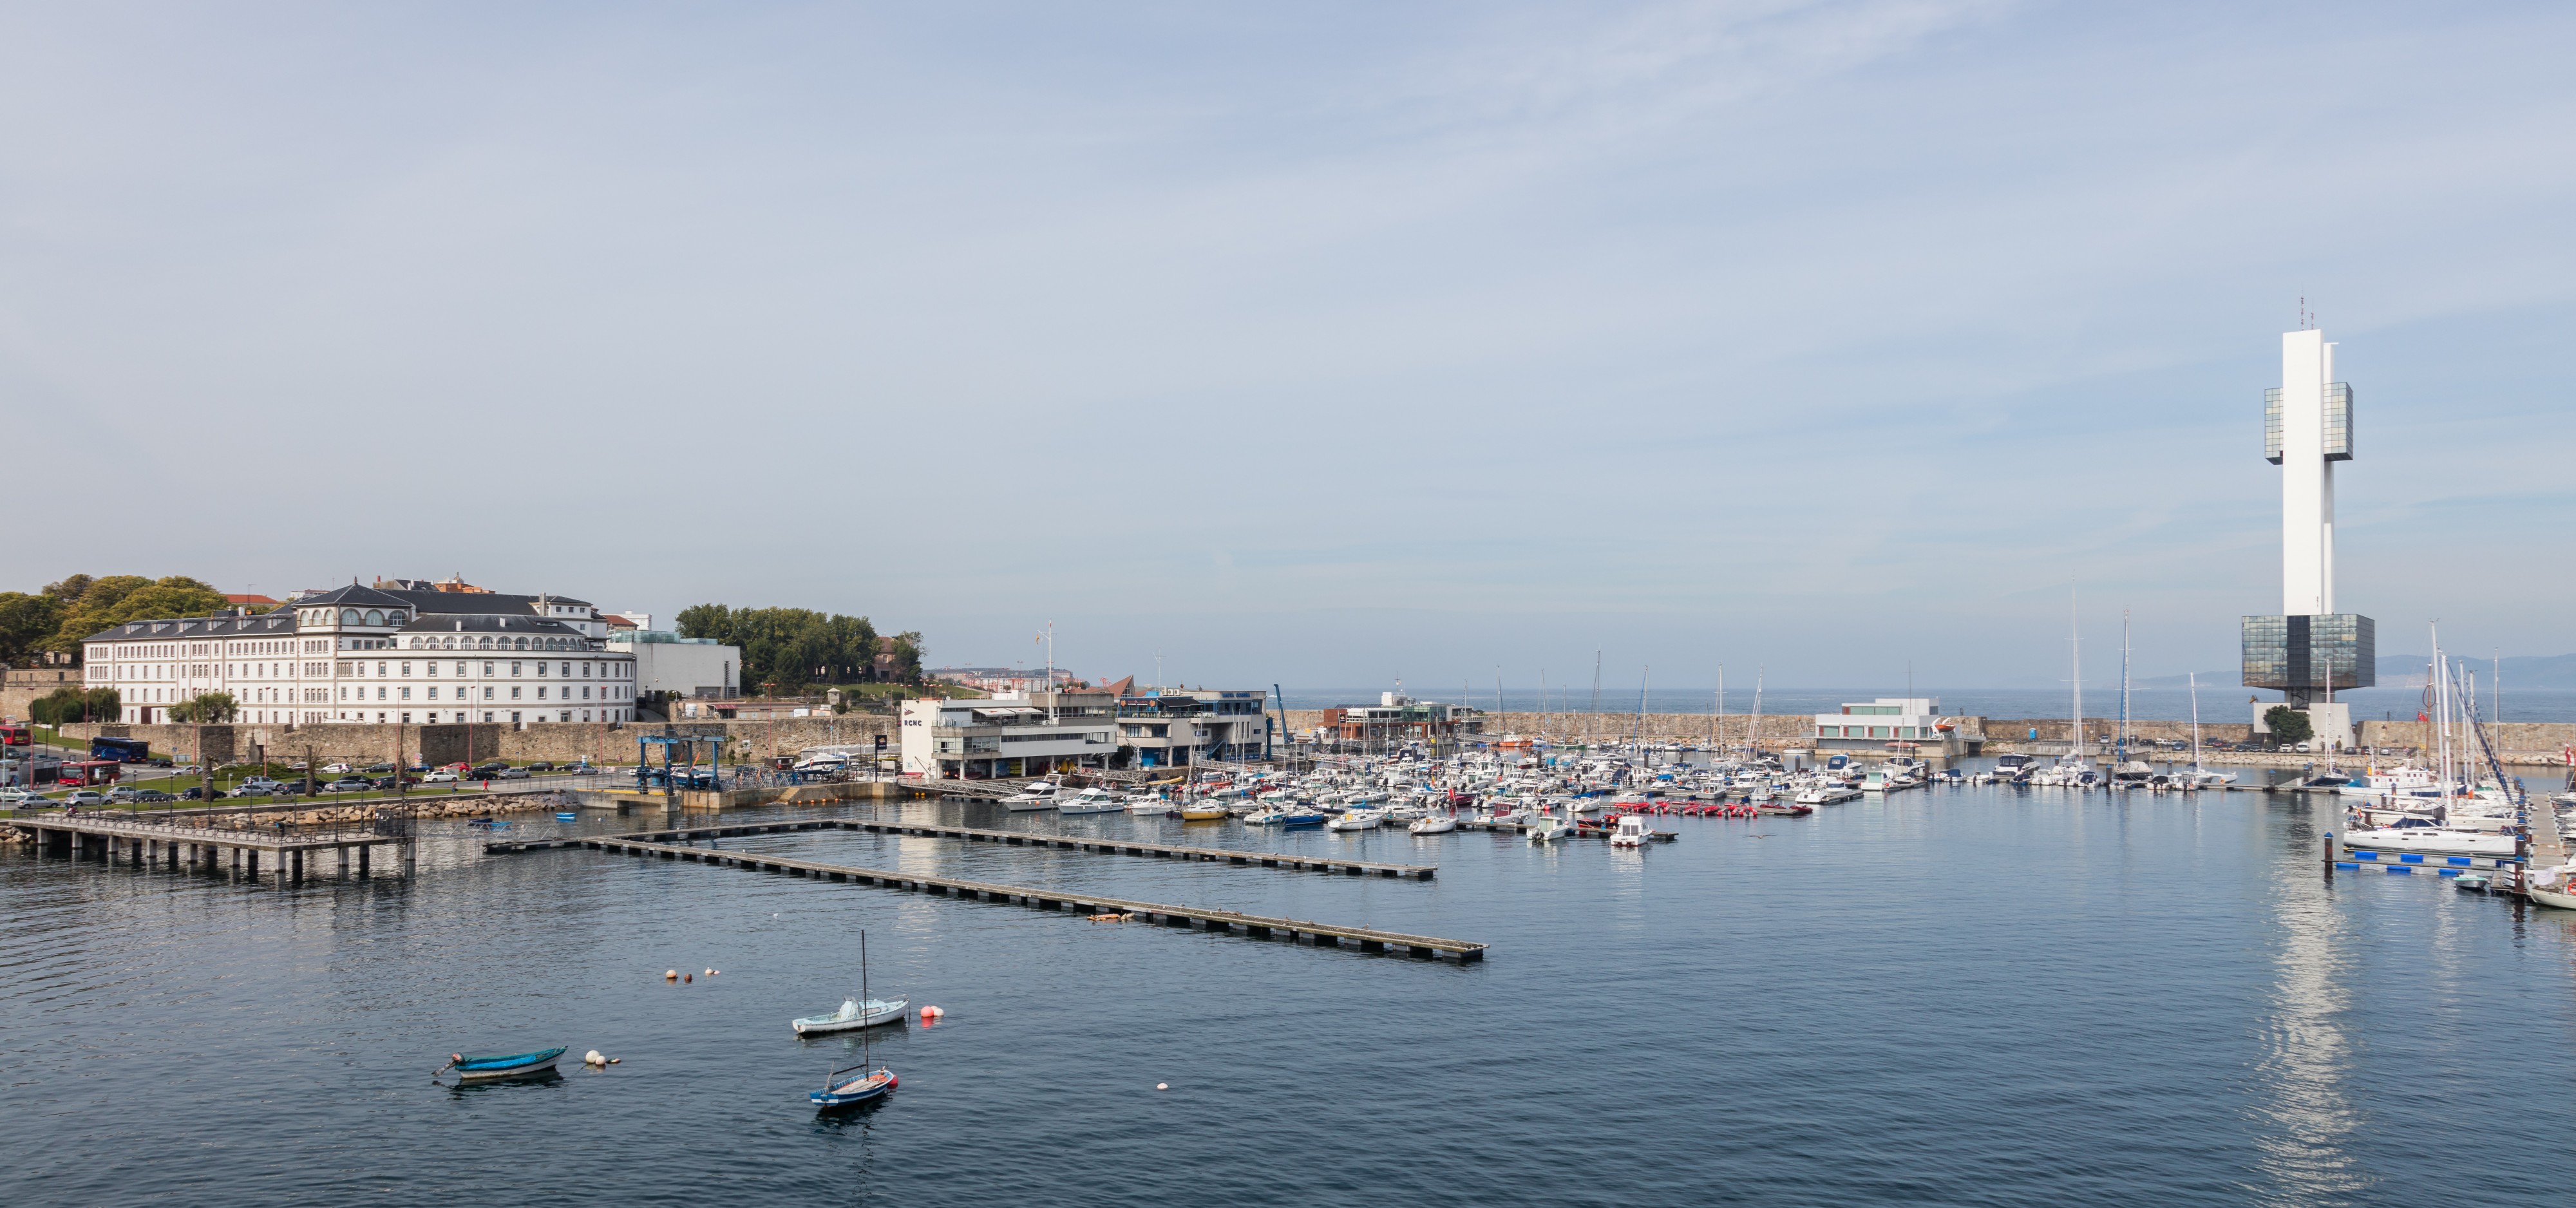 Puerto de La Coruña, España, 2015-09-25, DD 71